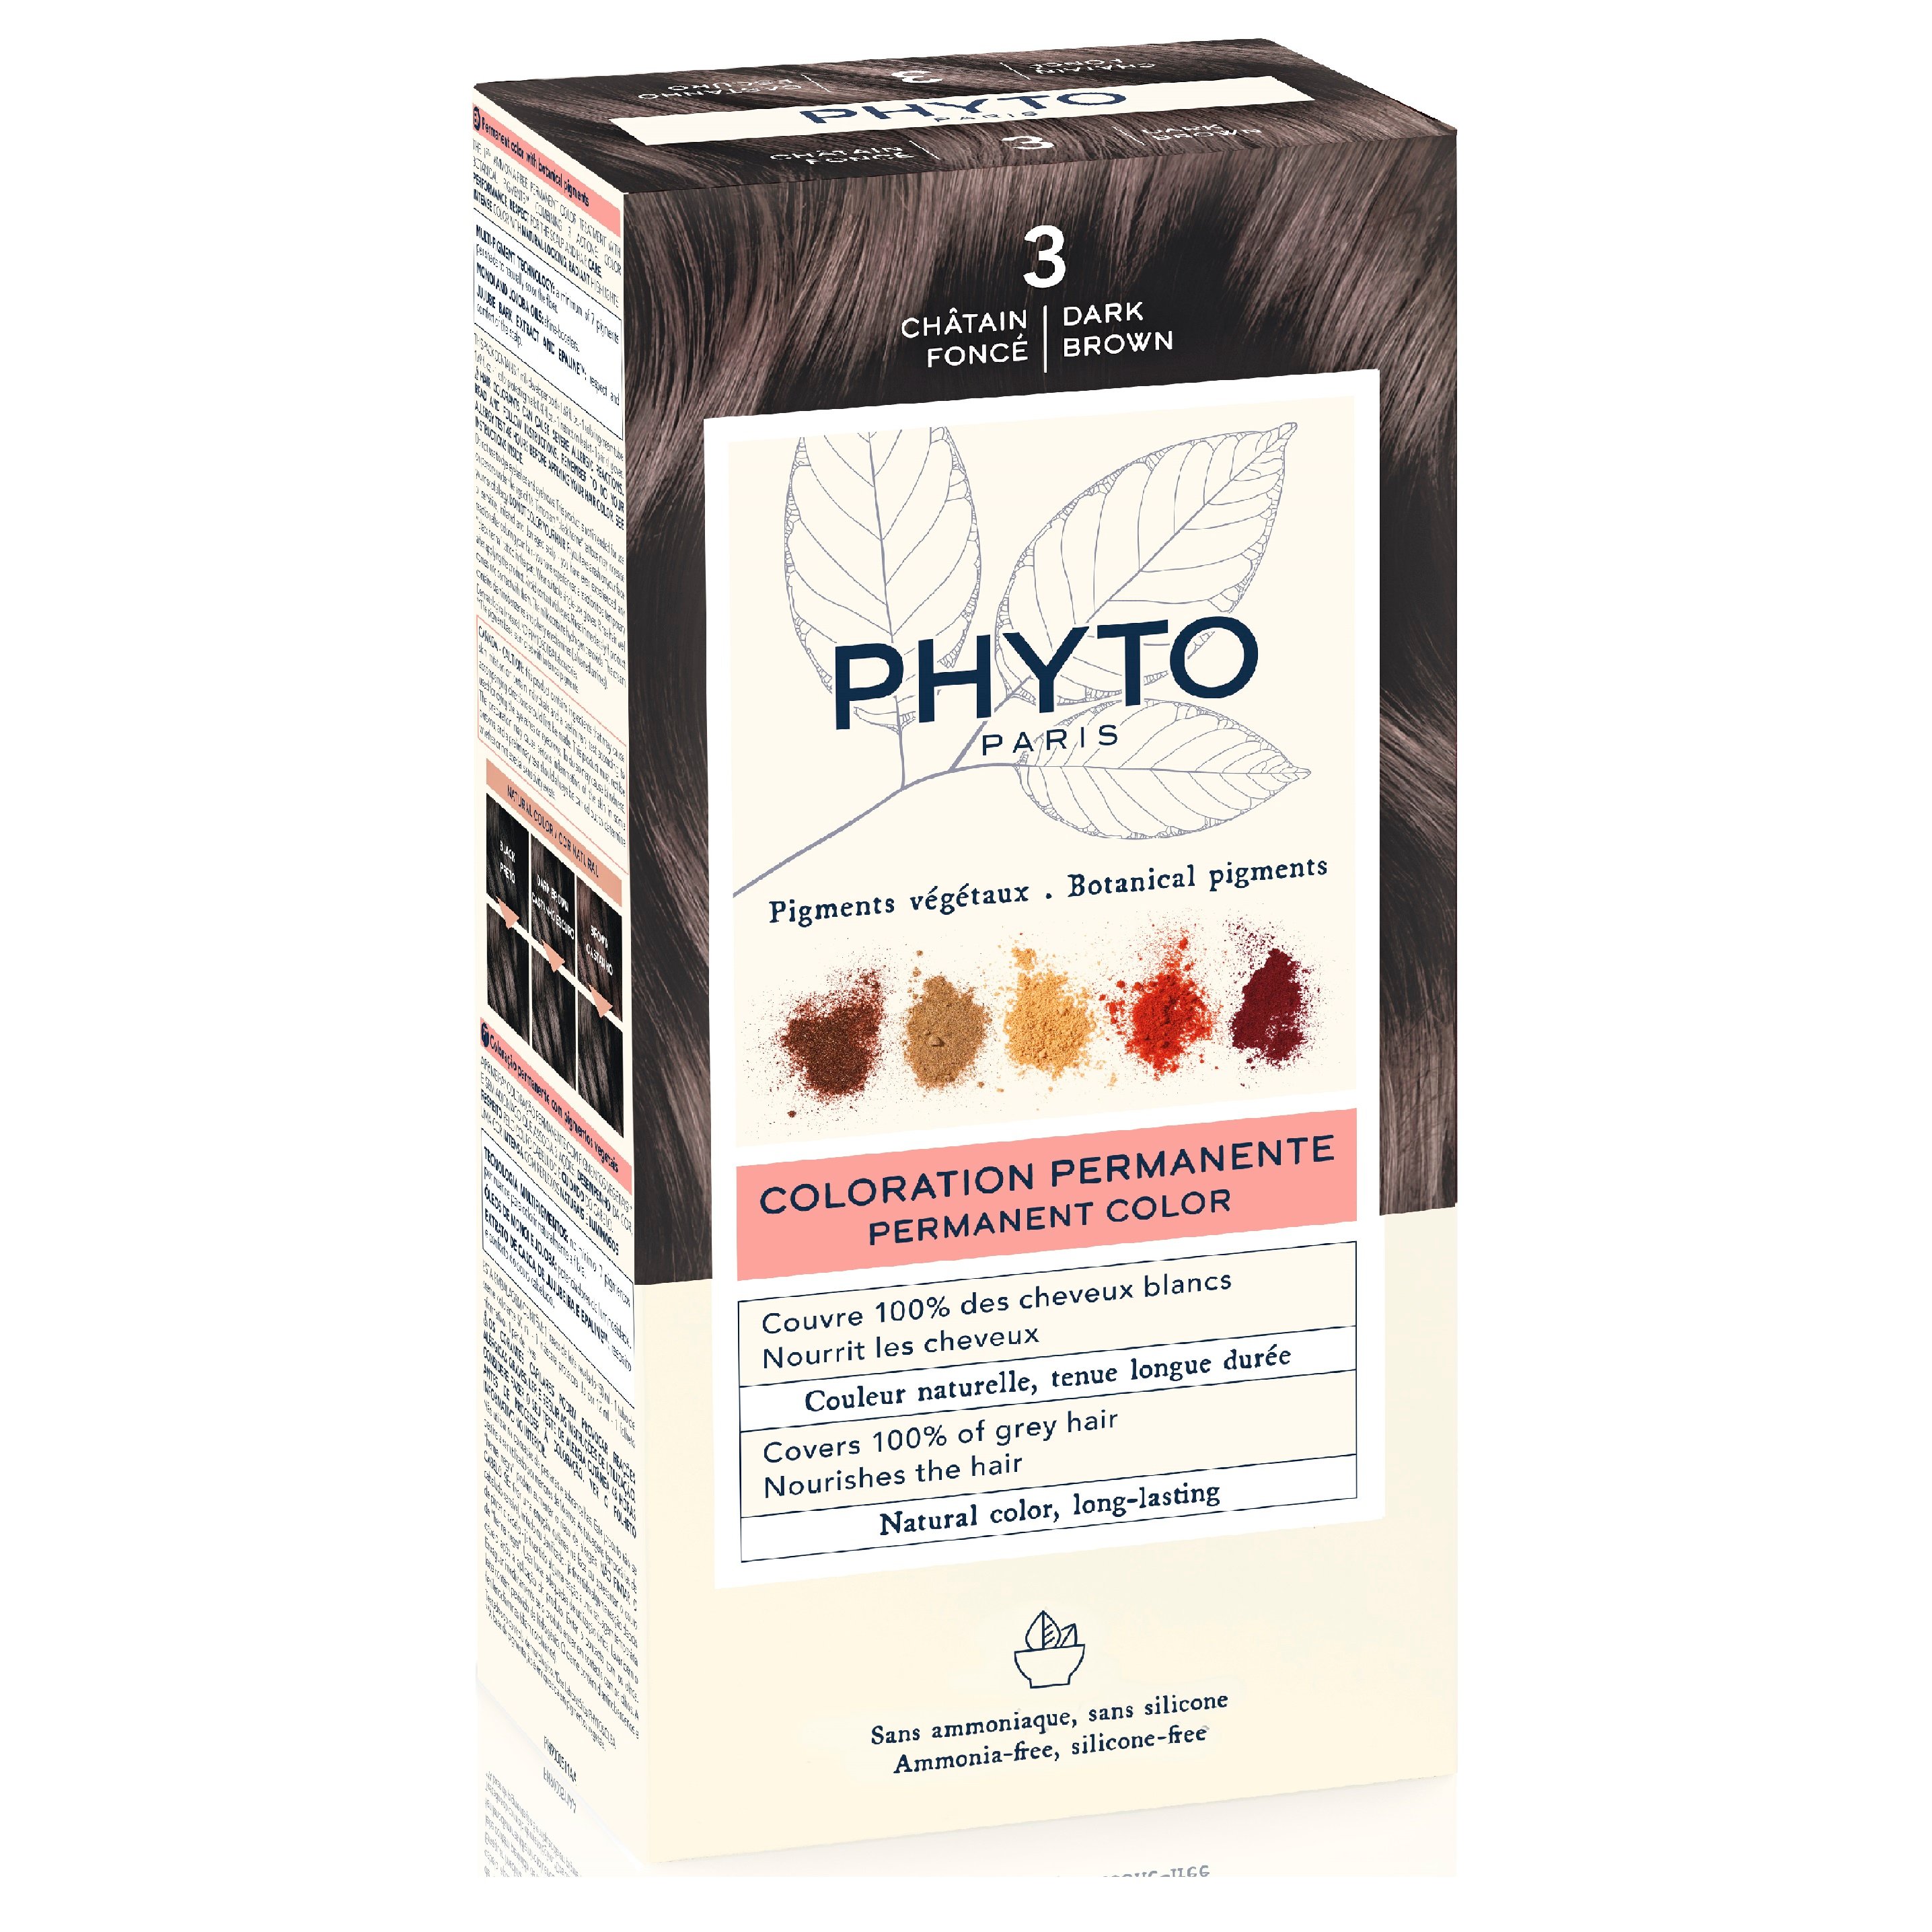 Крем-фарба для волосся Phyto Phytocolor, відтінок 3 (темний шатен), 112 мл (РН10017) - фото 2